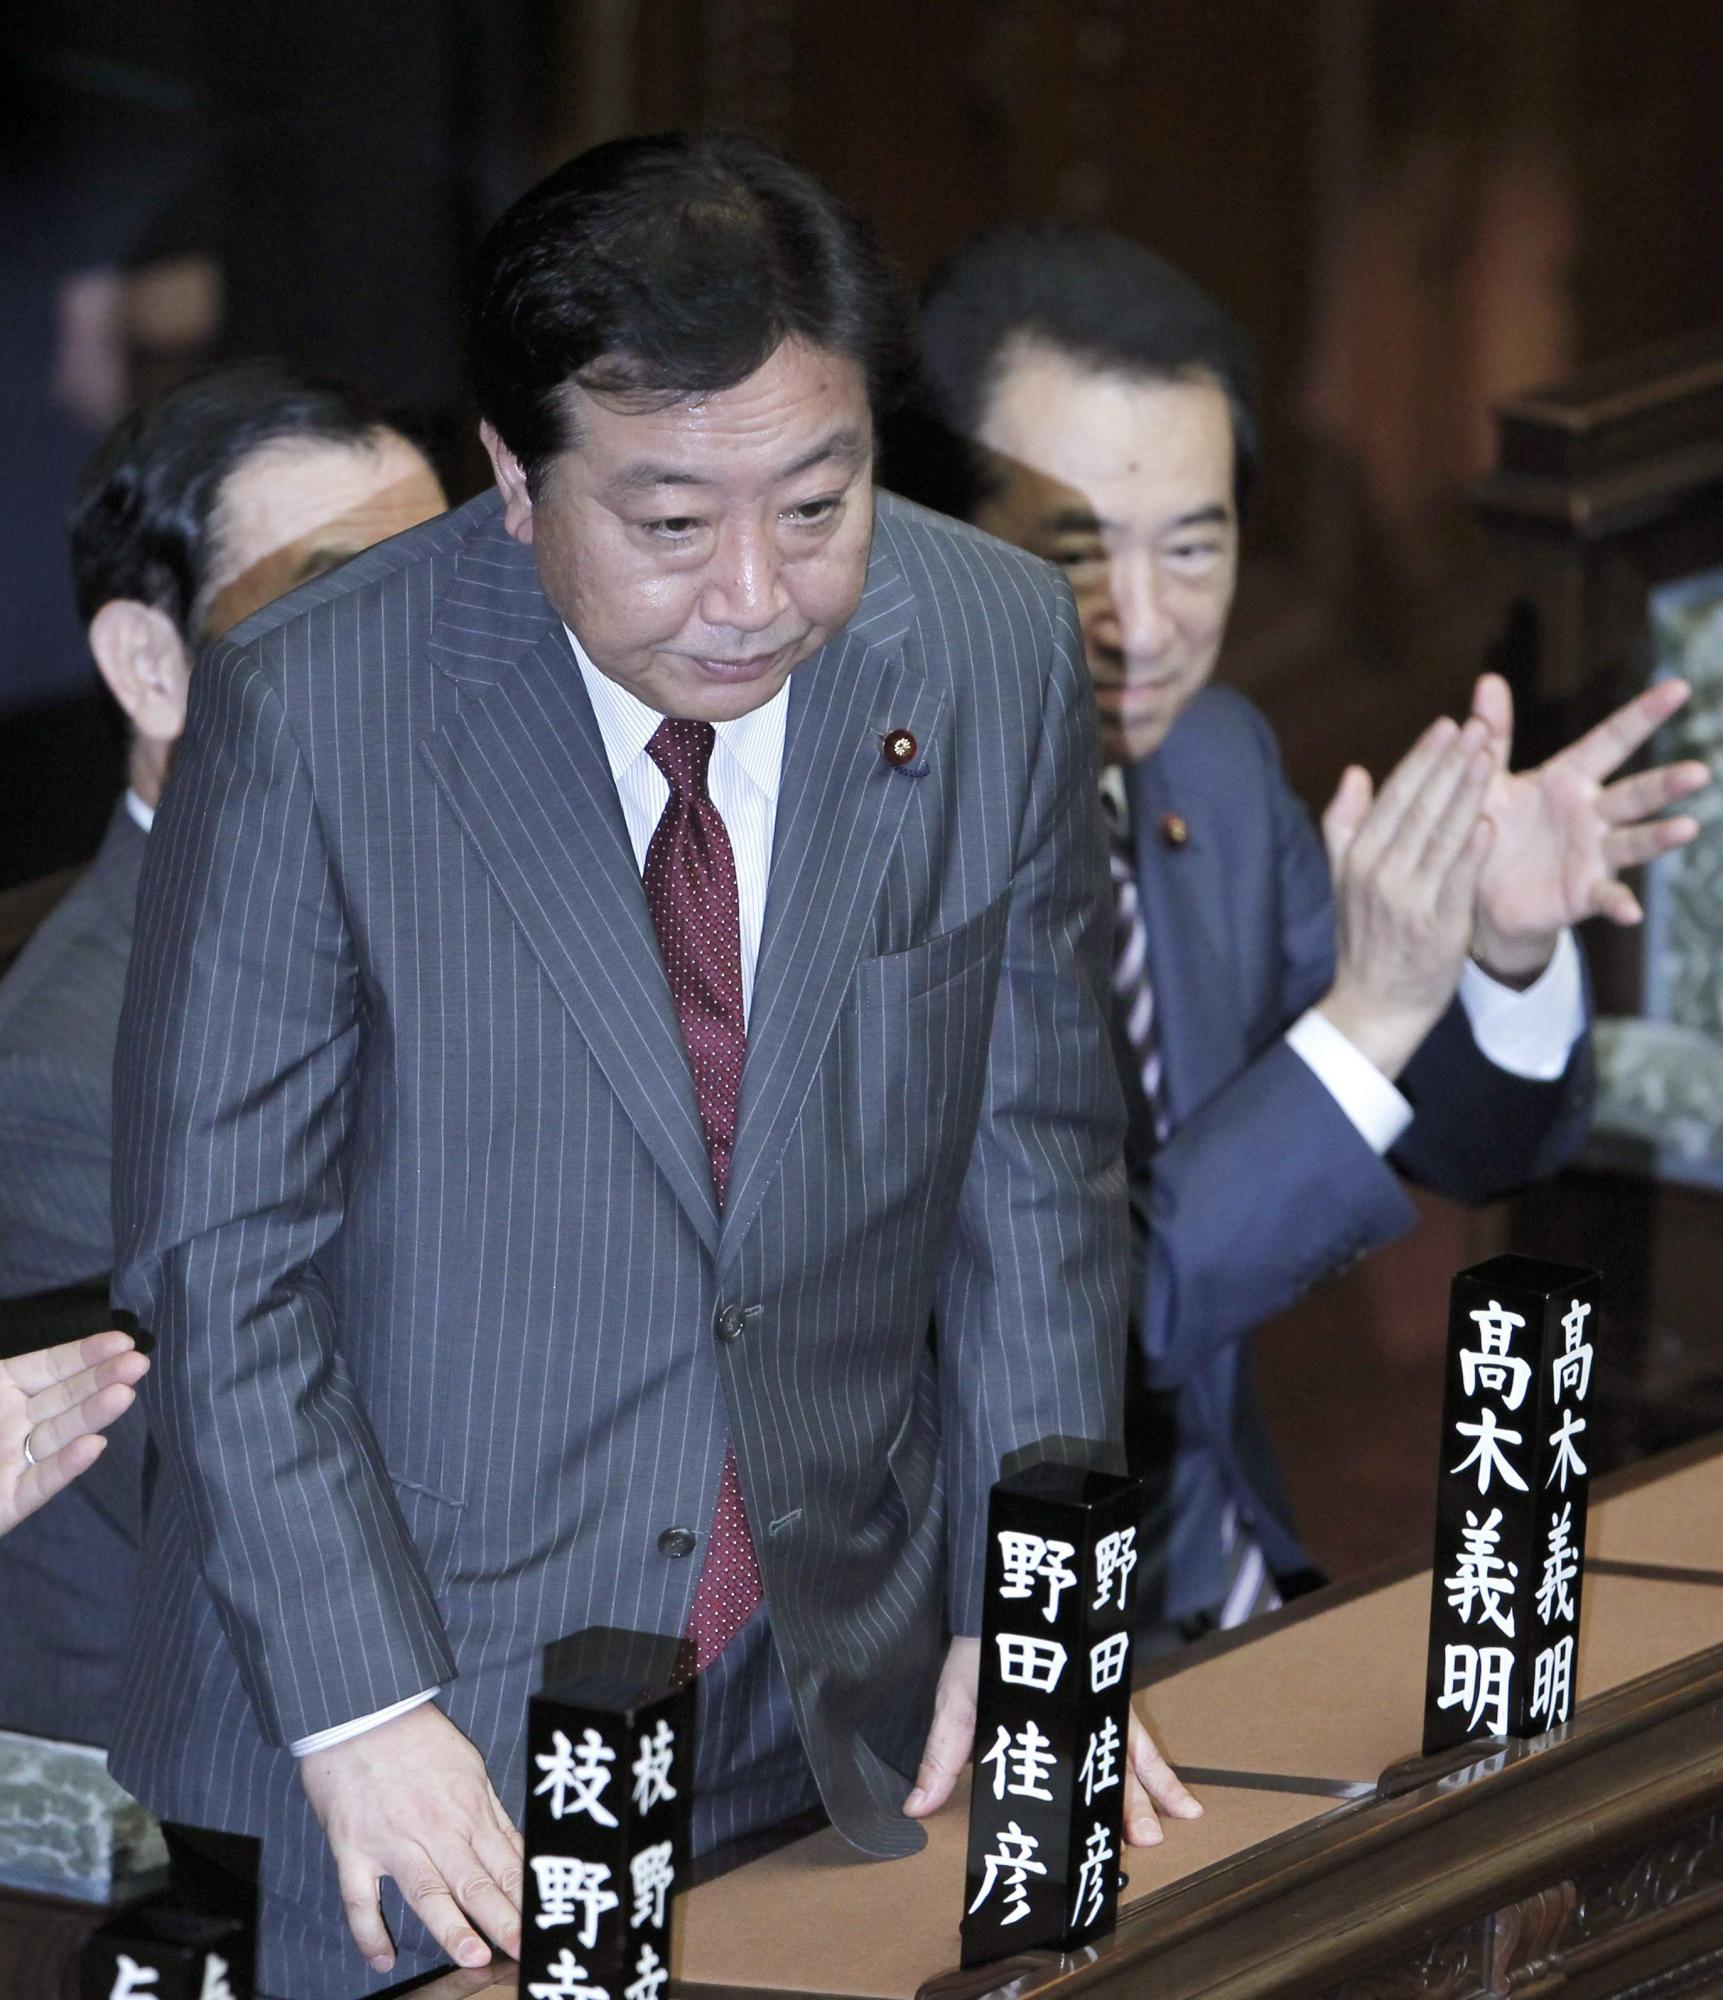 野田佳彦当选日本新首相 称不想刻意宣扬历史问题